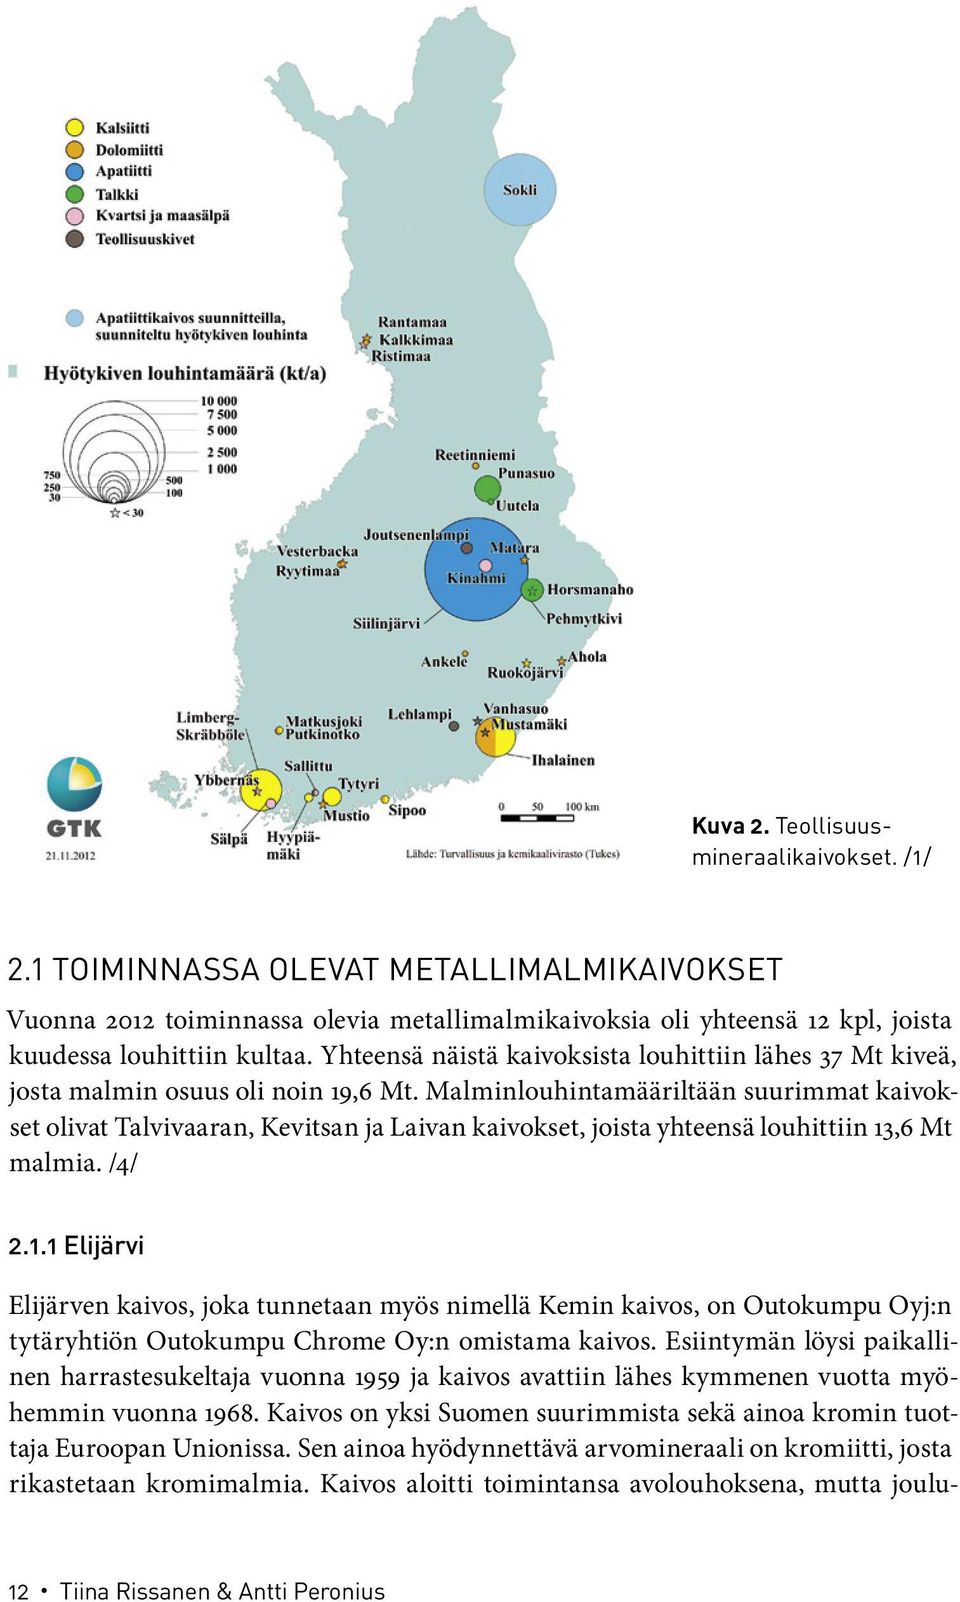 Malminlouhintamääriltään suurimmat kaivokset olivat Talvivaaran, Kevitsan ja Laivan kaivokset, joista yhteensä louhittiin 13